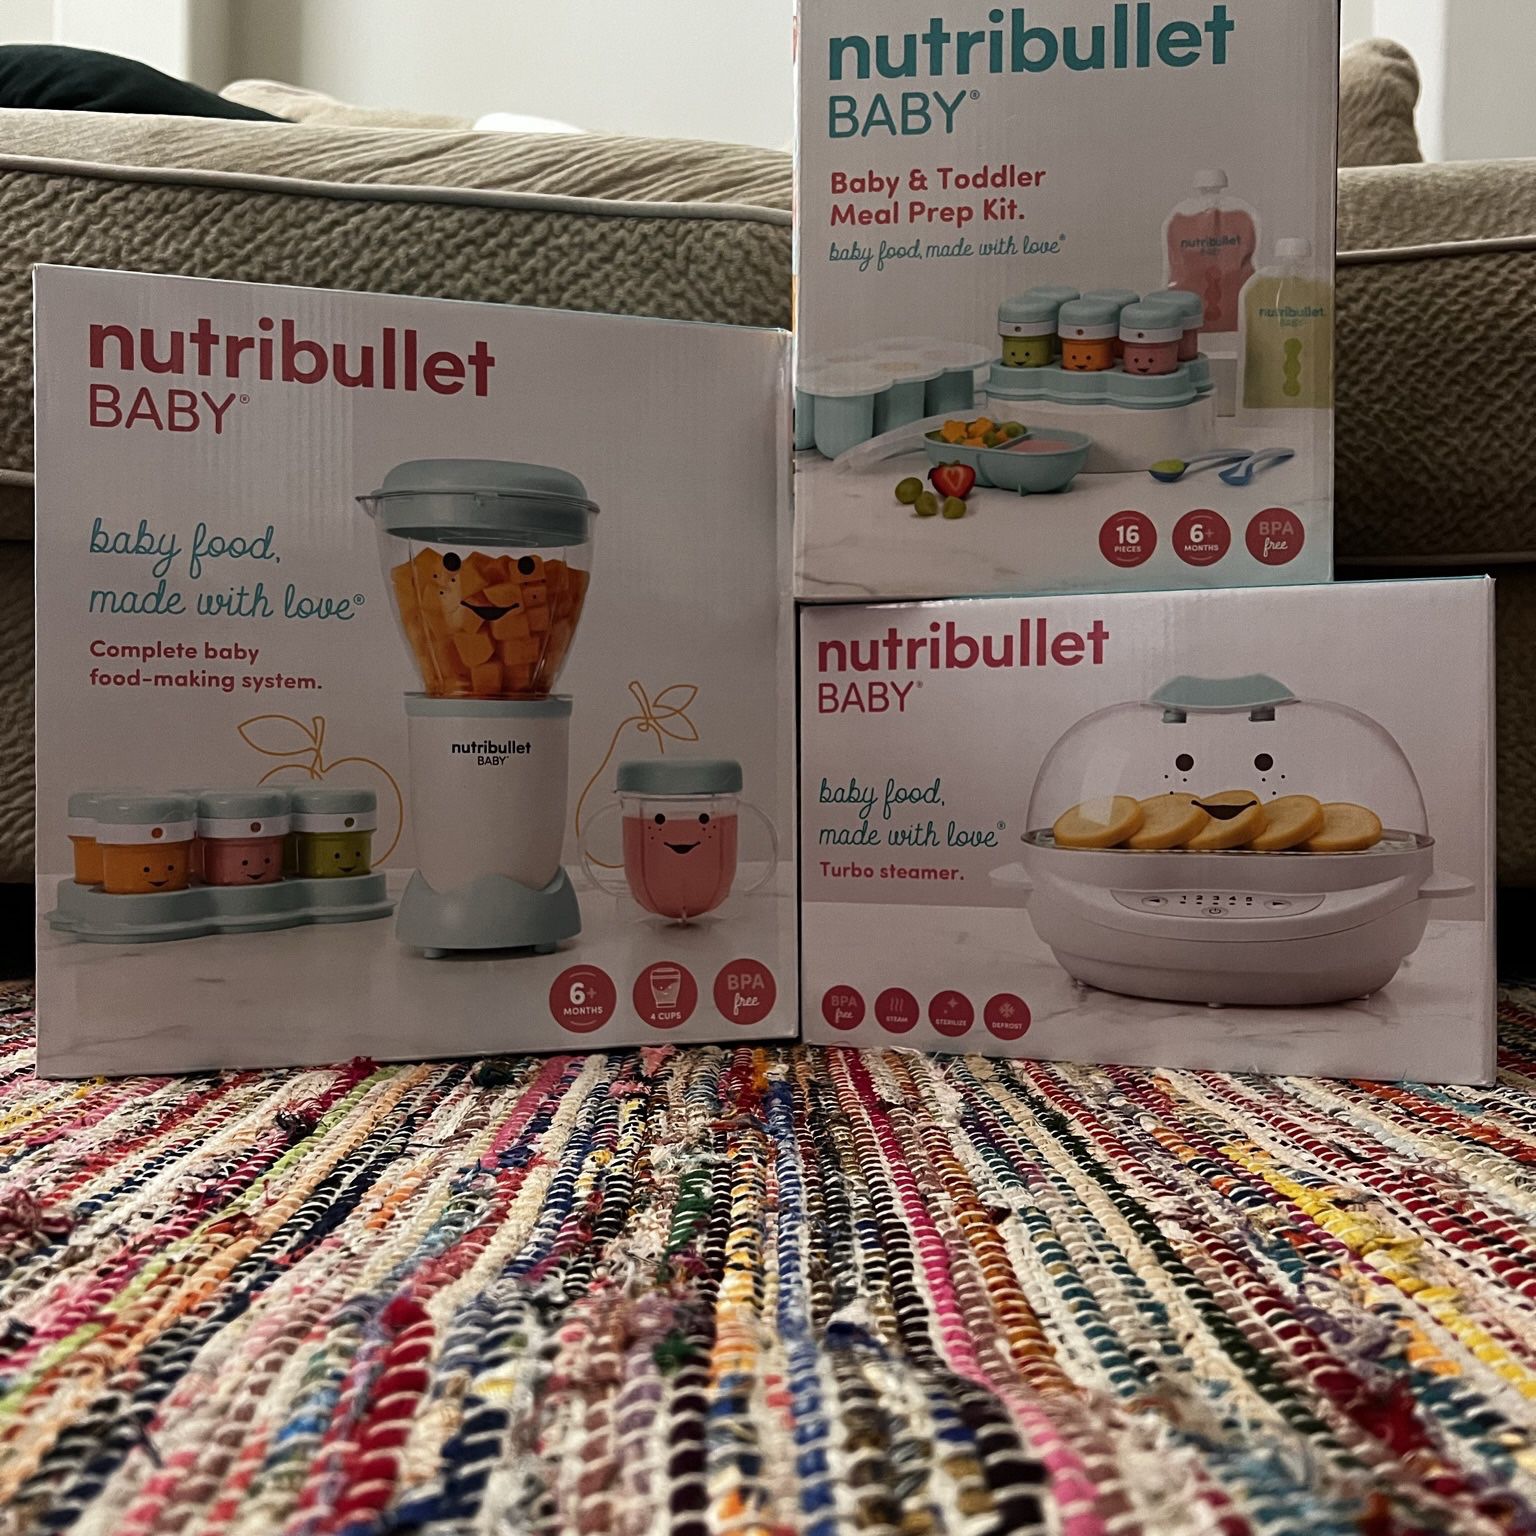 Nutribullet Baby Meal Prep Kit